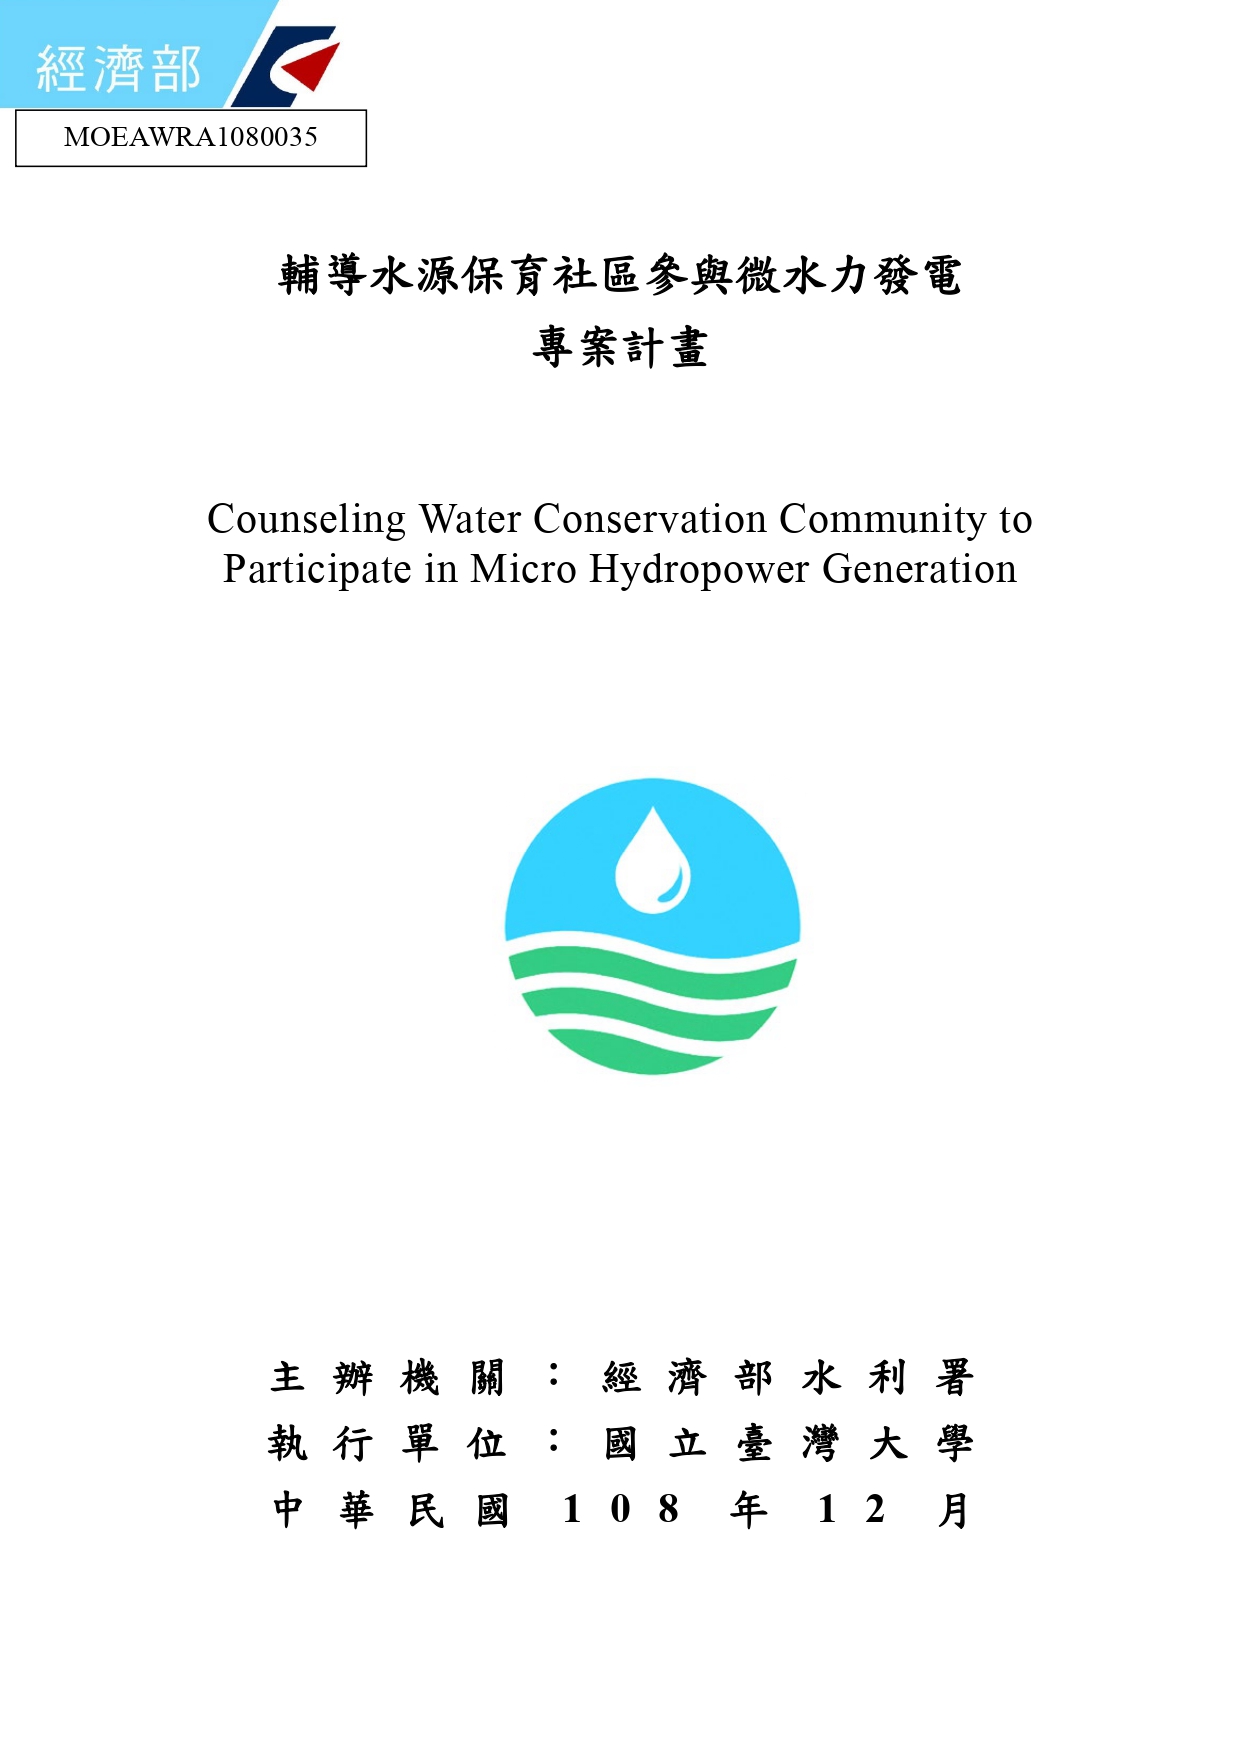 輔導水源保育社區參與微水力發電專案計畫